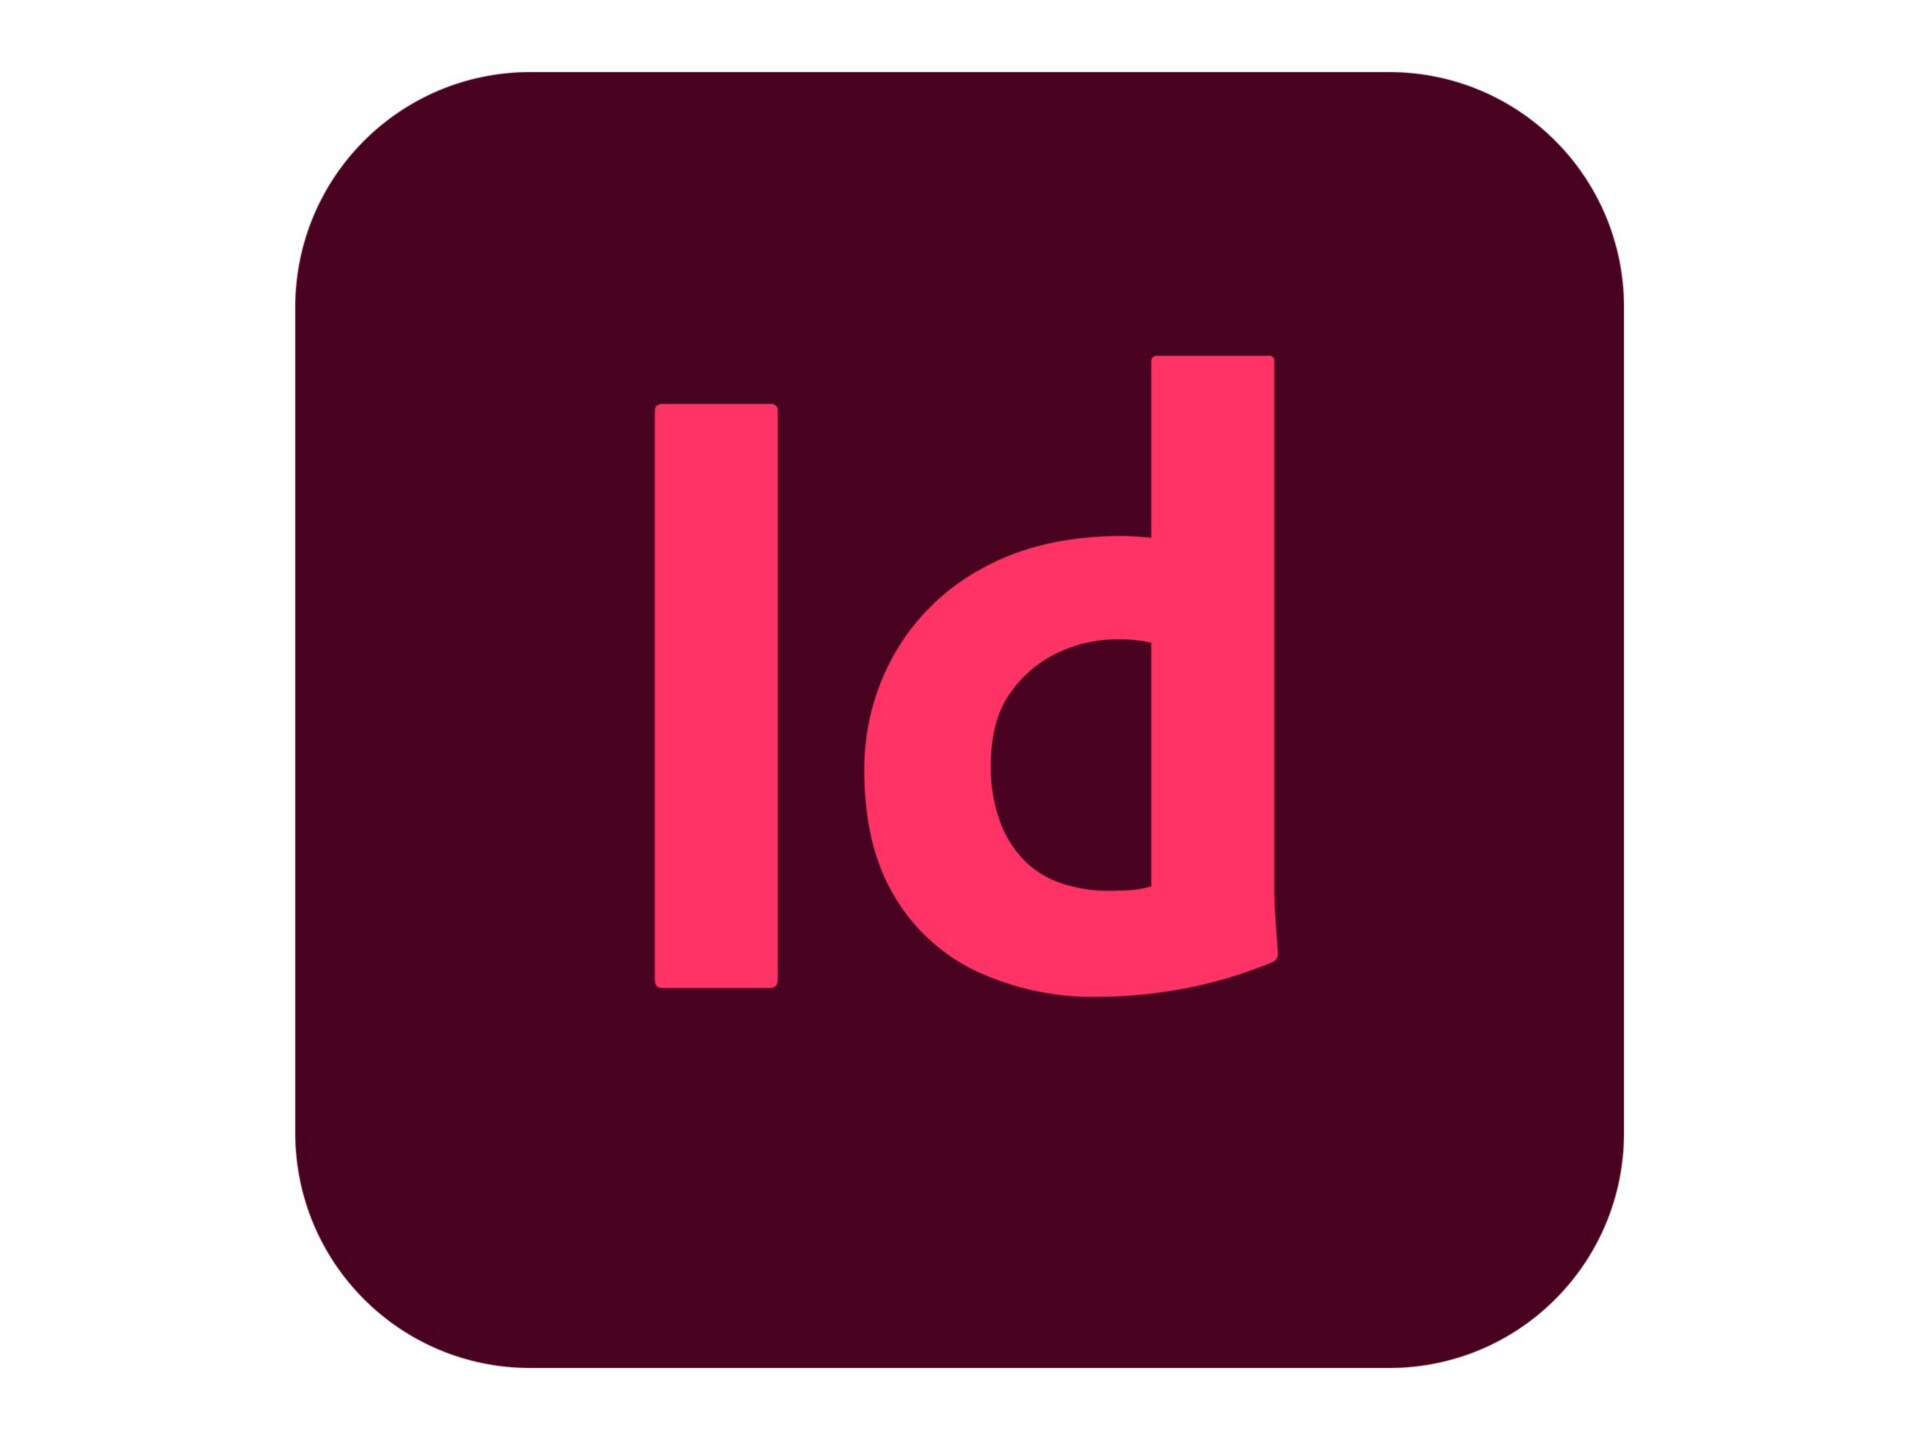 Adobe InDesign CC for Enterprise - Subscription New (46 months) - 1 named u